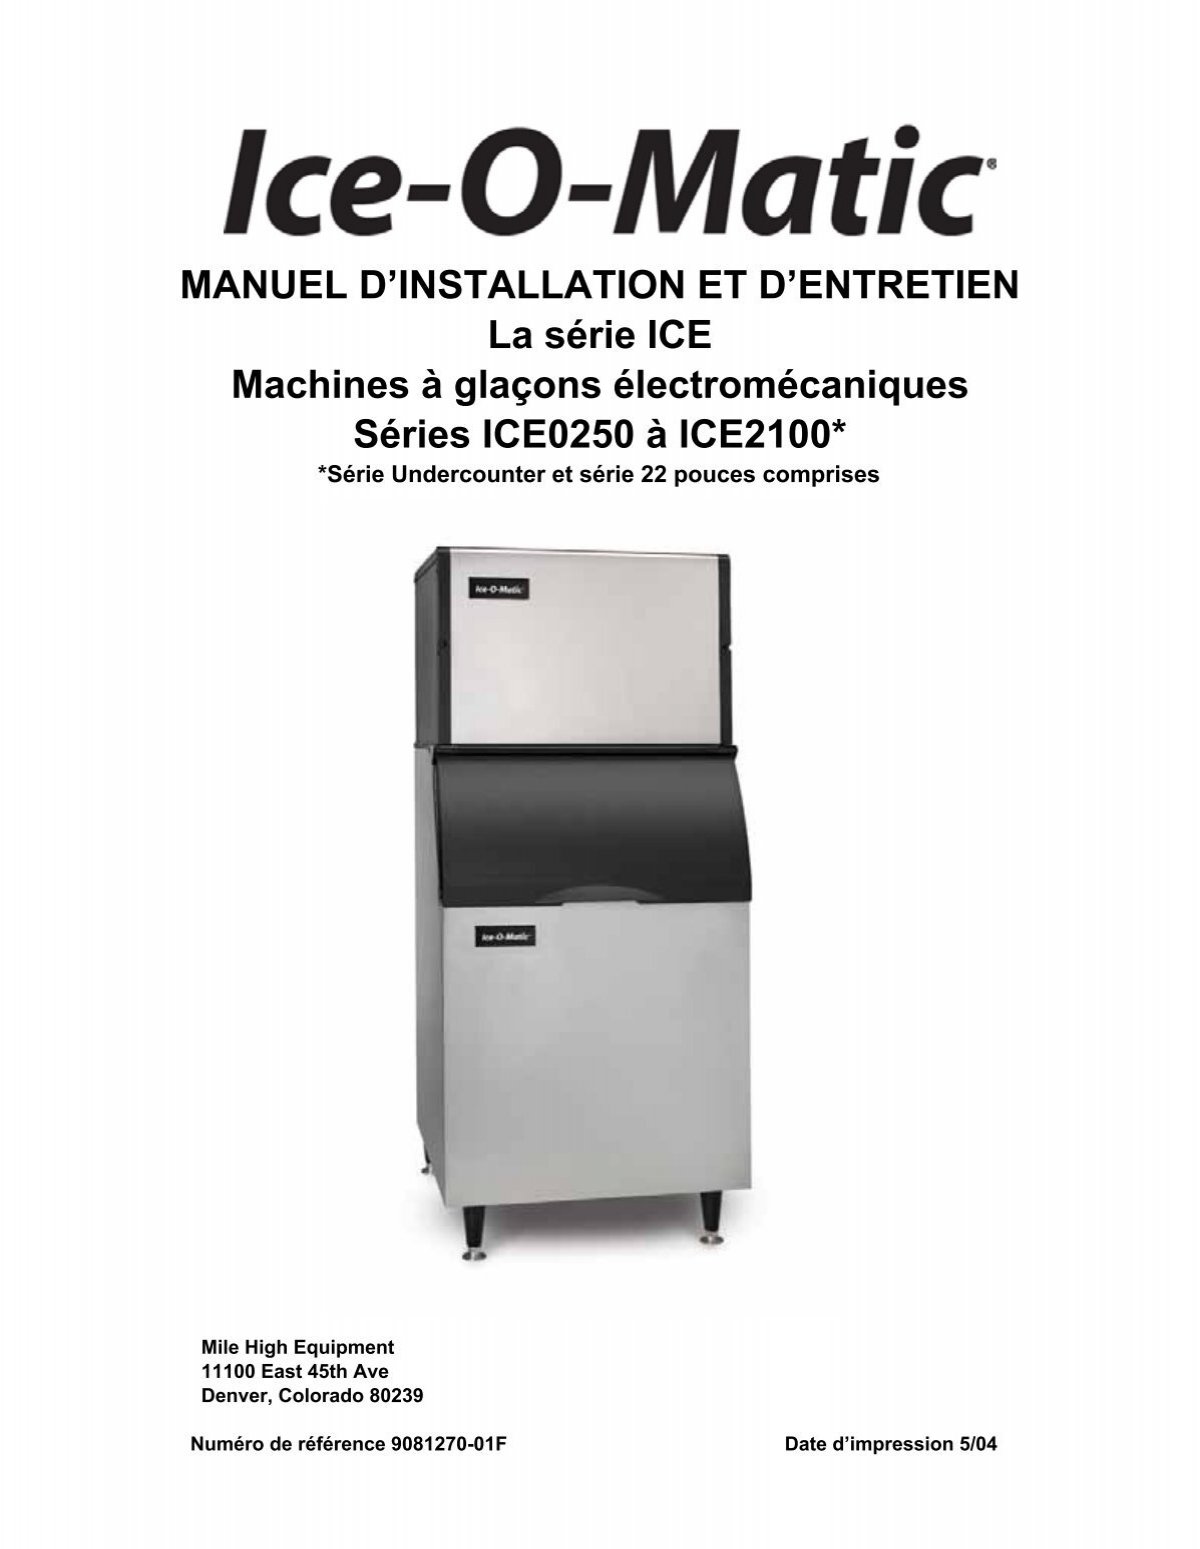 Machines à glaçons électromécaniques La série ICE ... - Ice-O-Matic